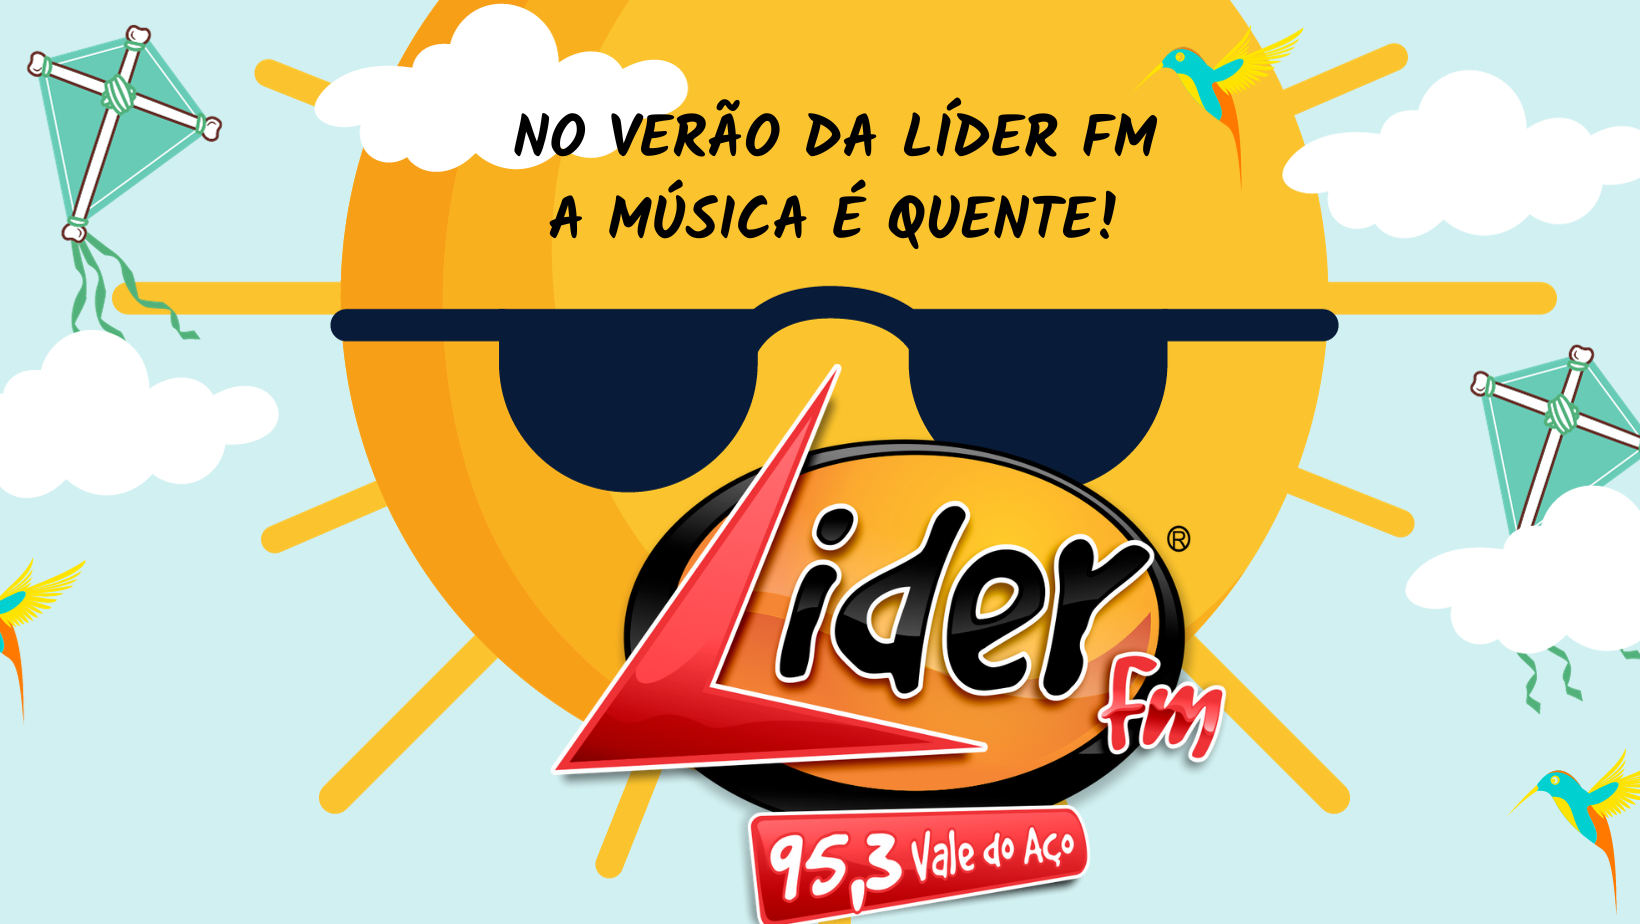 NO VERÃO DA LÍDER FM